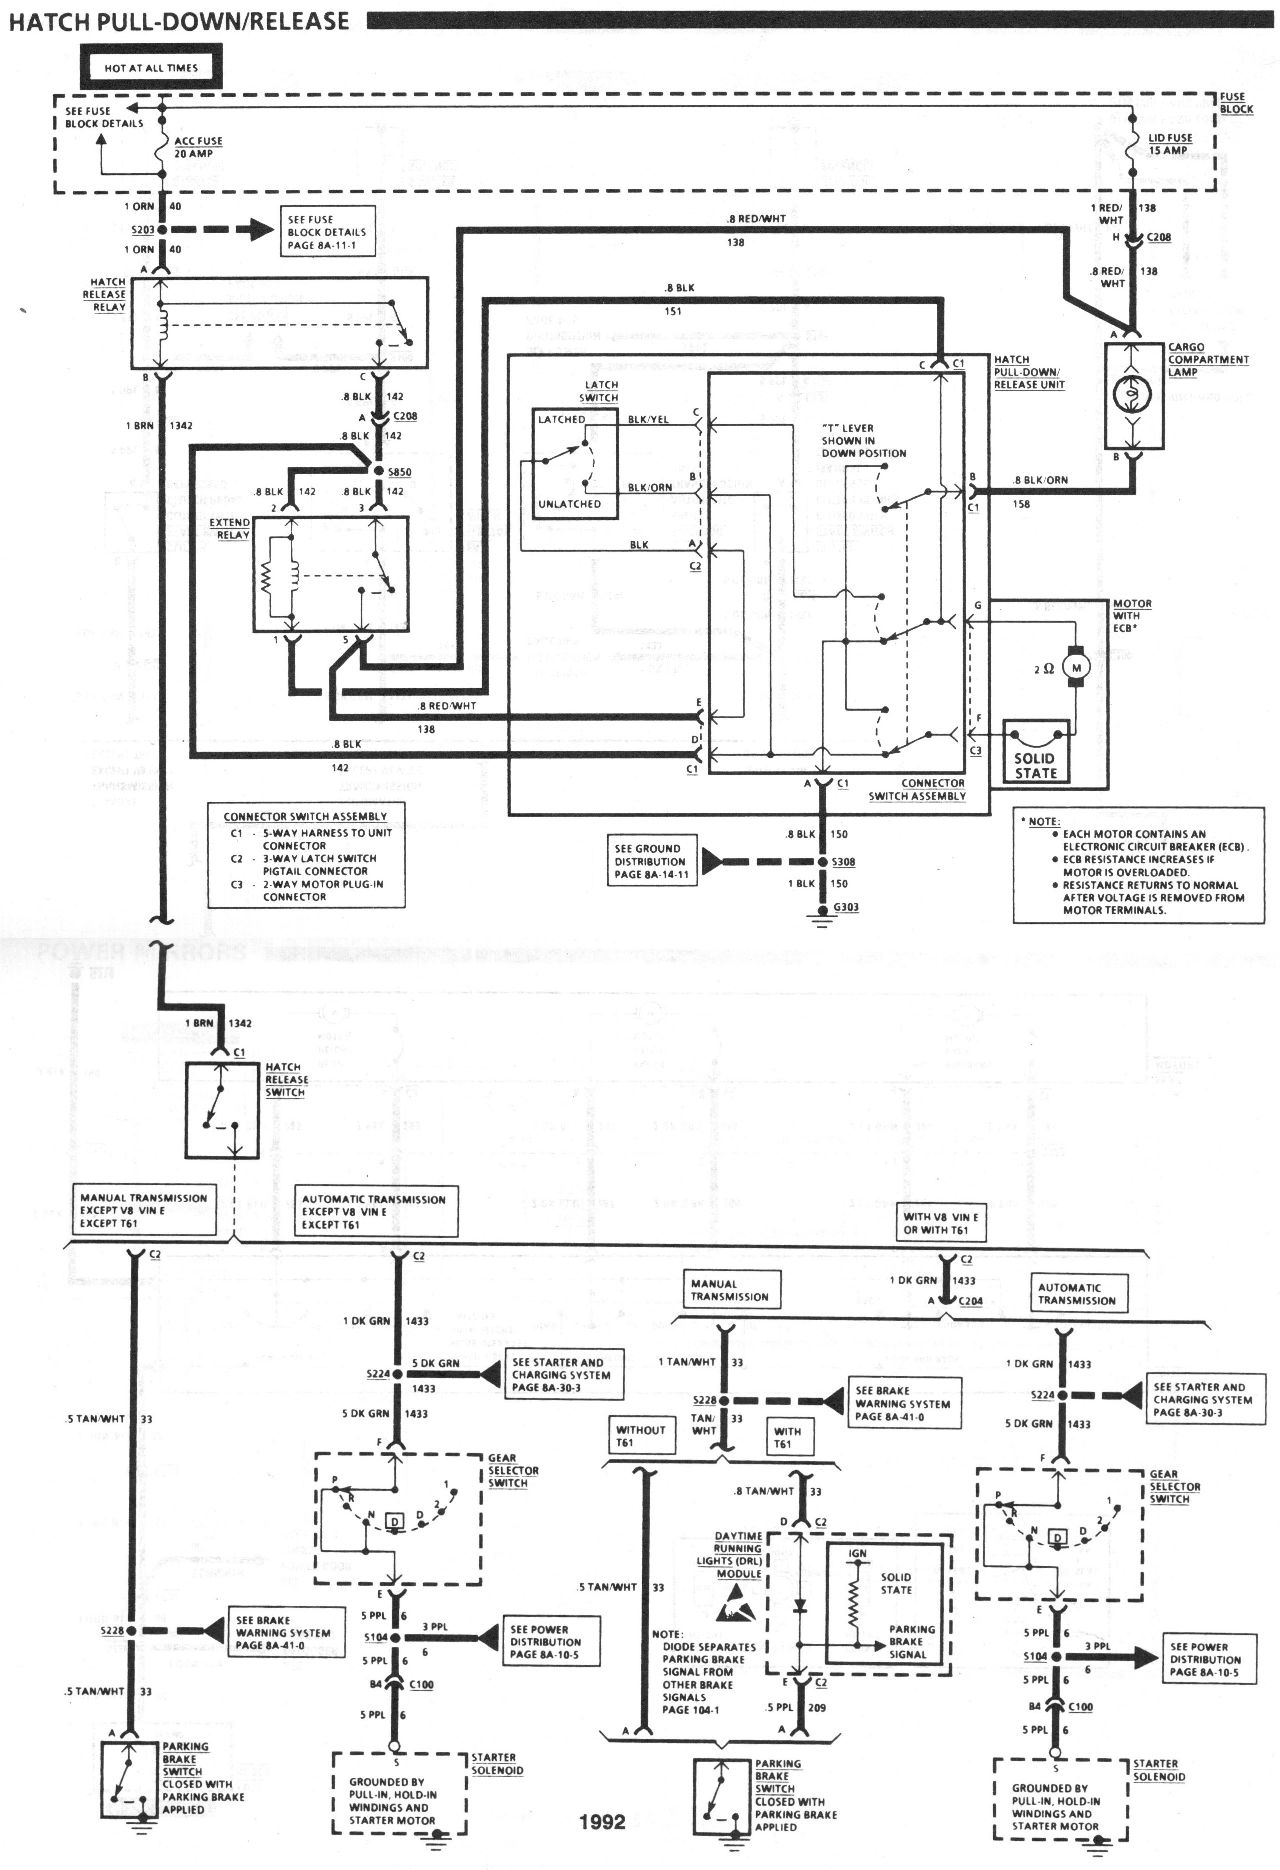 91-92 Hatch Wiring Diagram Needed